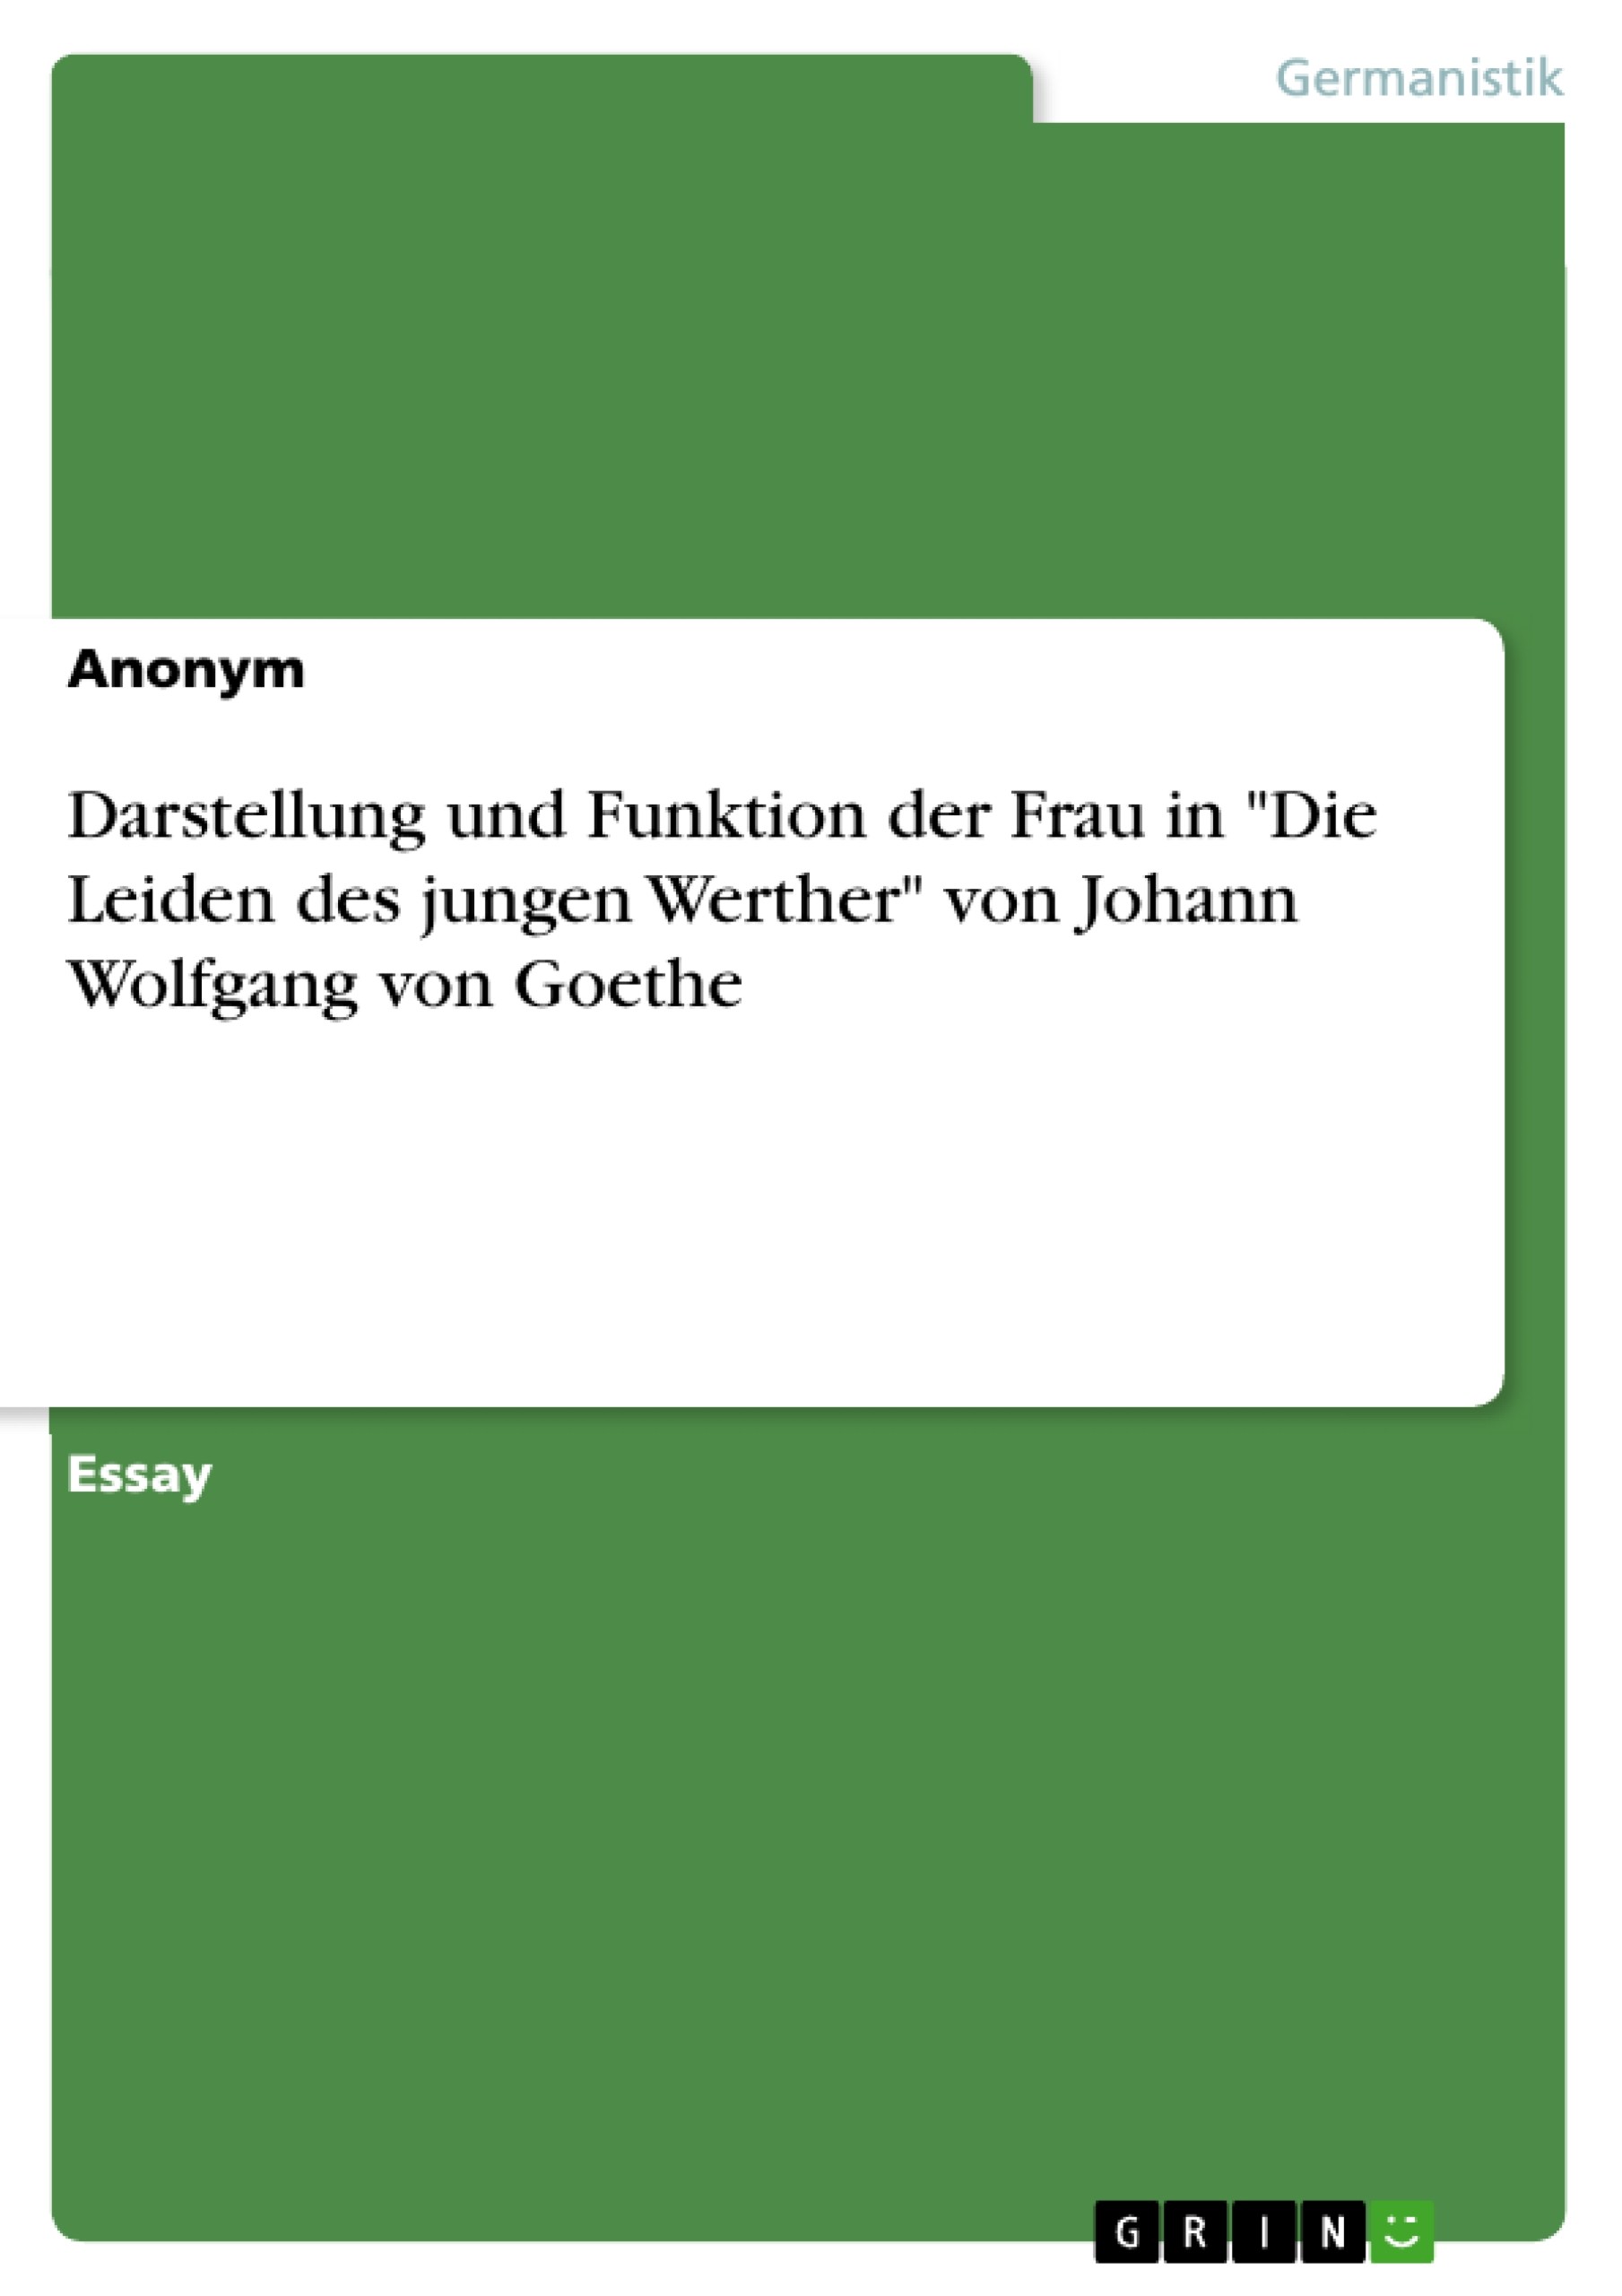 Darstellung und Funktion der Frau in 'Die Leiden des jungen Werther' von Johann Wolfgang von Goethe